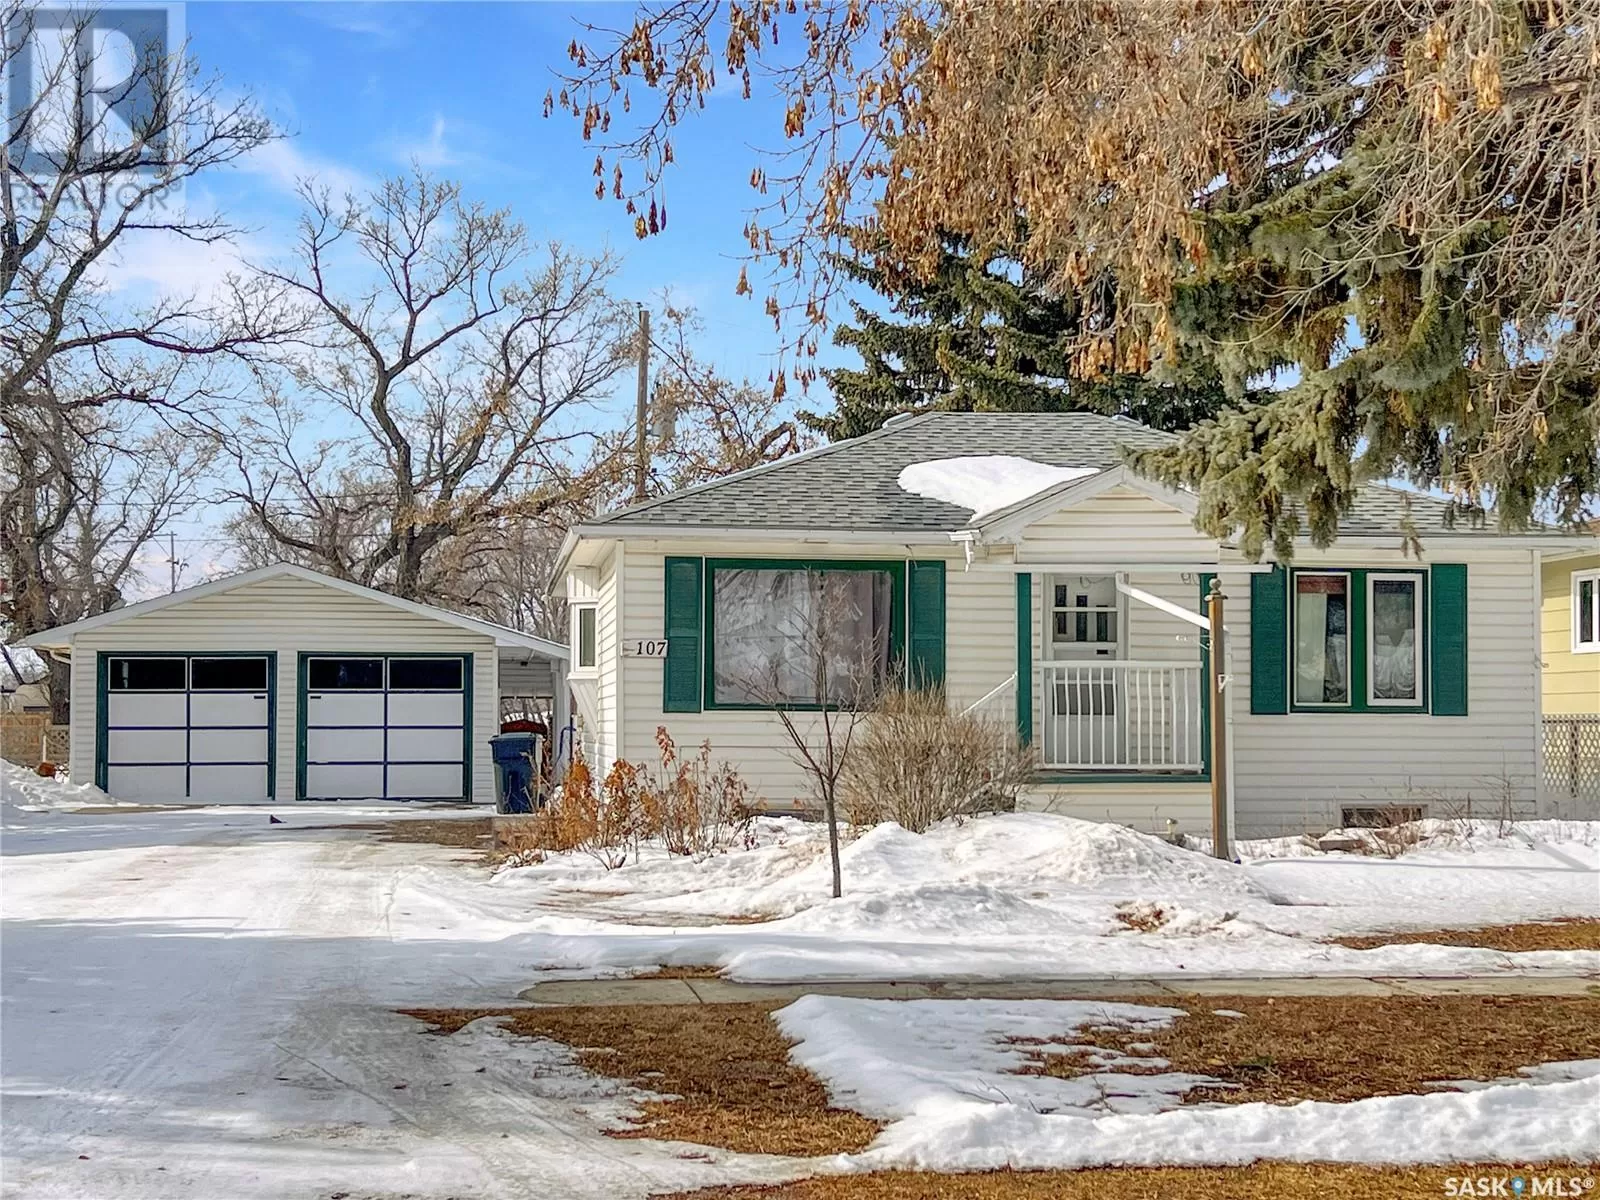 House for rent: 107 Main Street, Borden, Saskatchewan S0K 0N0